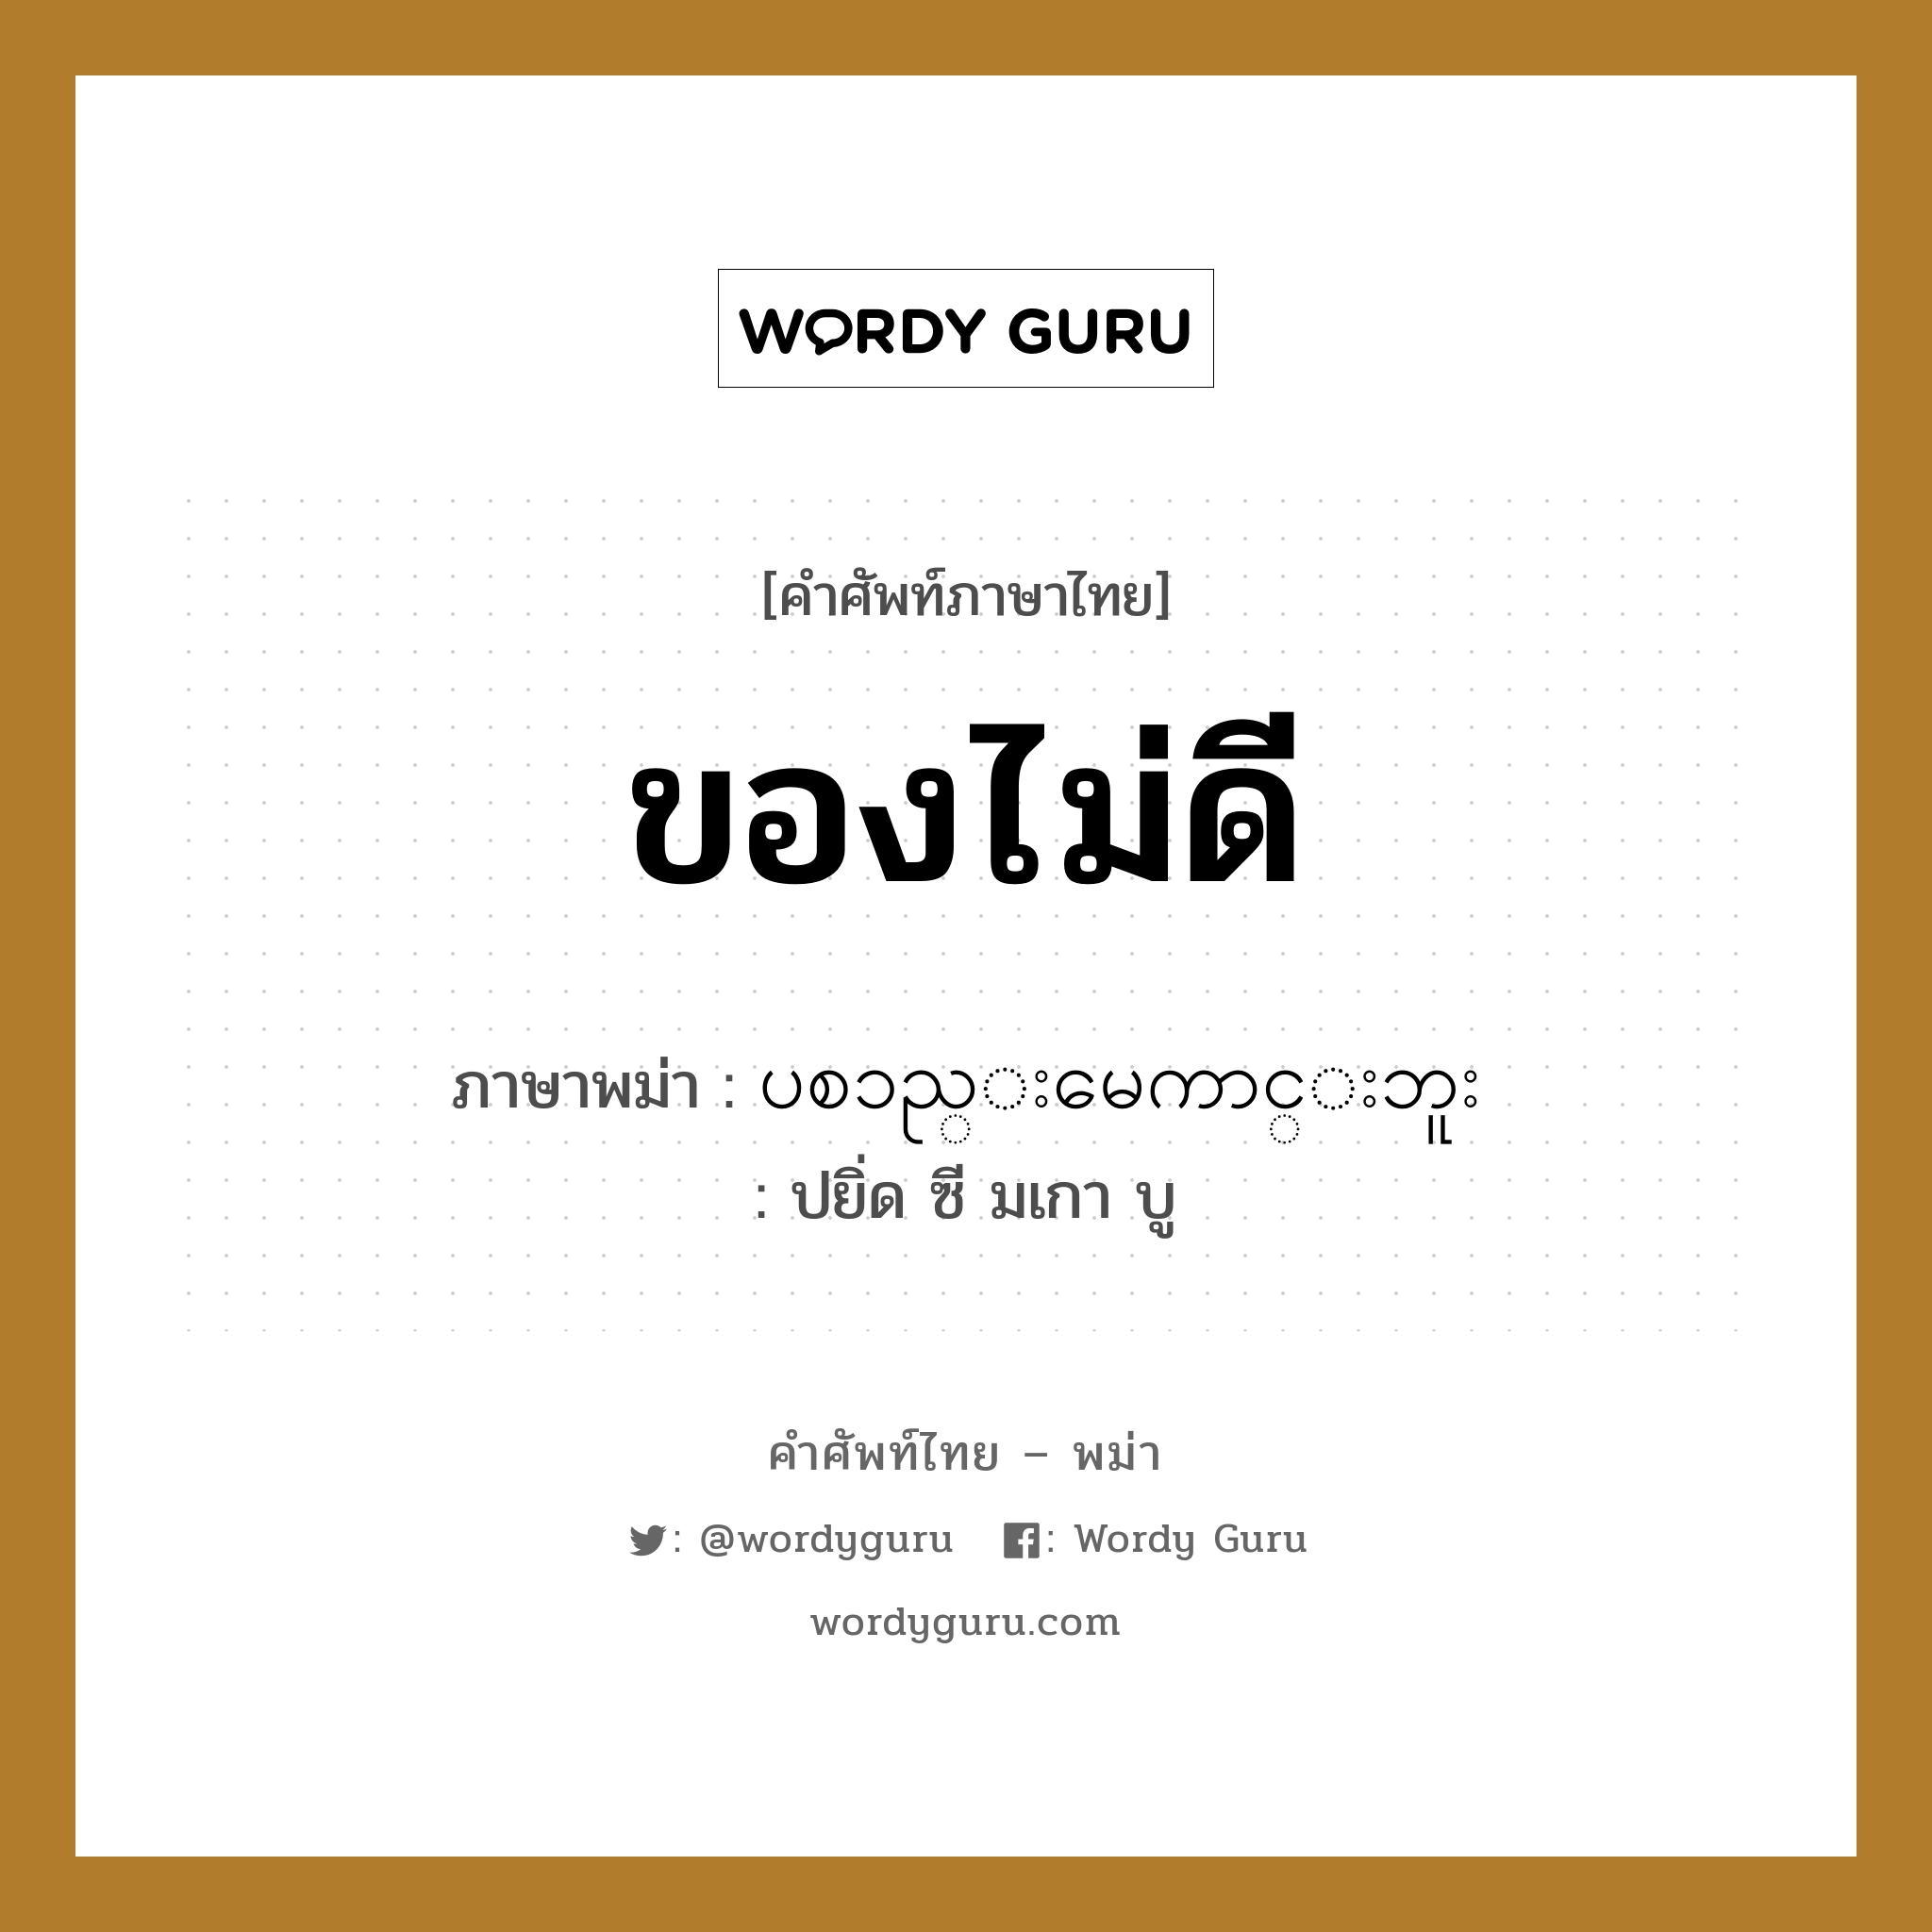 ပစၥည္းမေကာင္းဘူး ภาษาไทย?, คำศัพท์ภาษาไทย - พม่า ပစၥည္းမေကာင္းဘူး ภาษาพม่า ของไม่ดี หมวด บทสนทนาการซื้อขาย ปยิ่ด ซี มเกา บู หมวด บทสนทนาการซื้อขาย